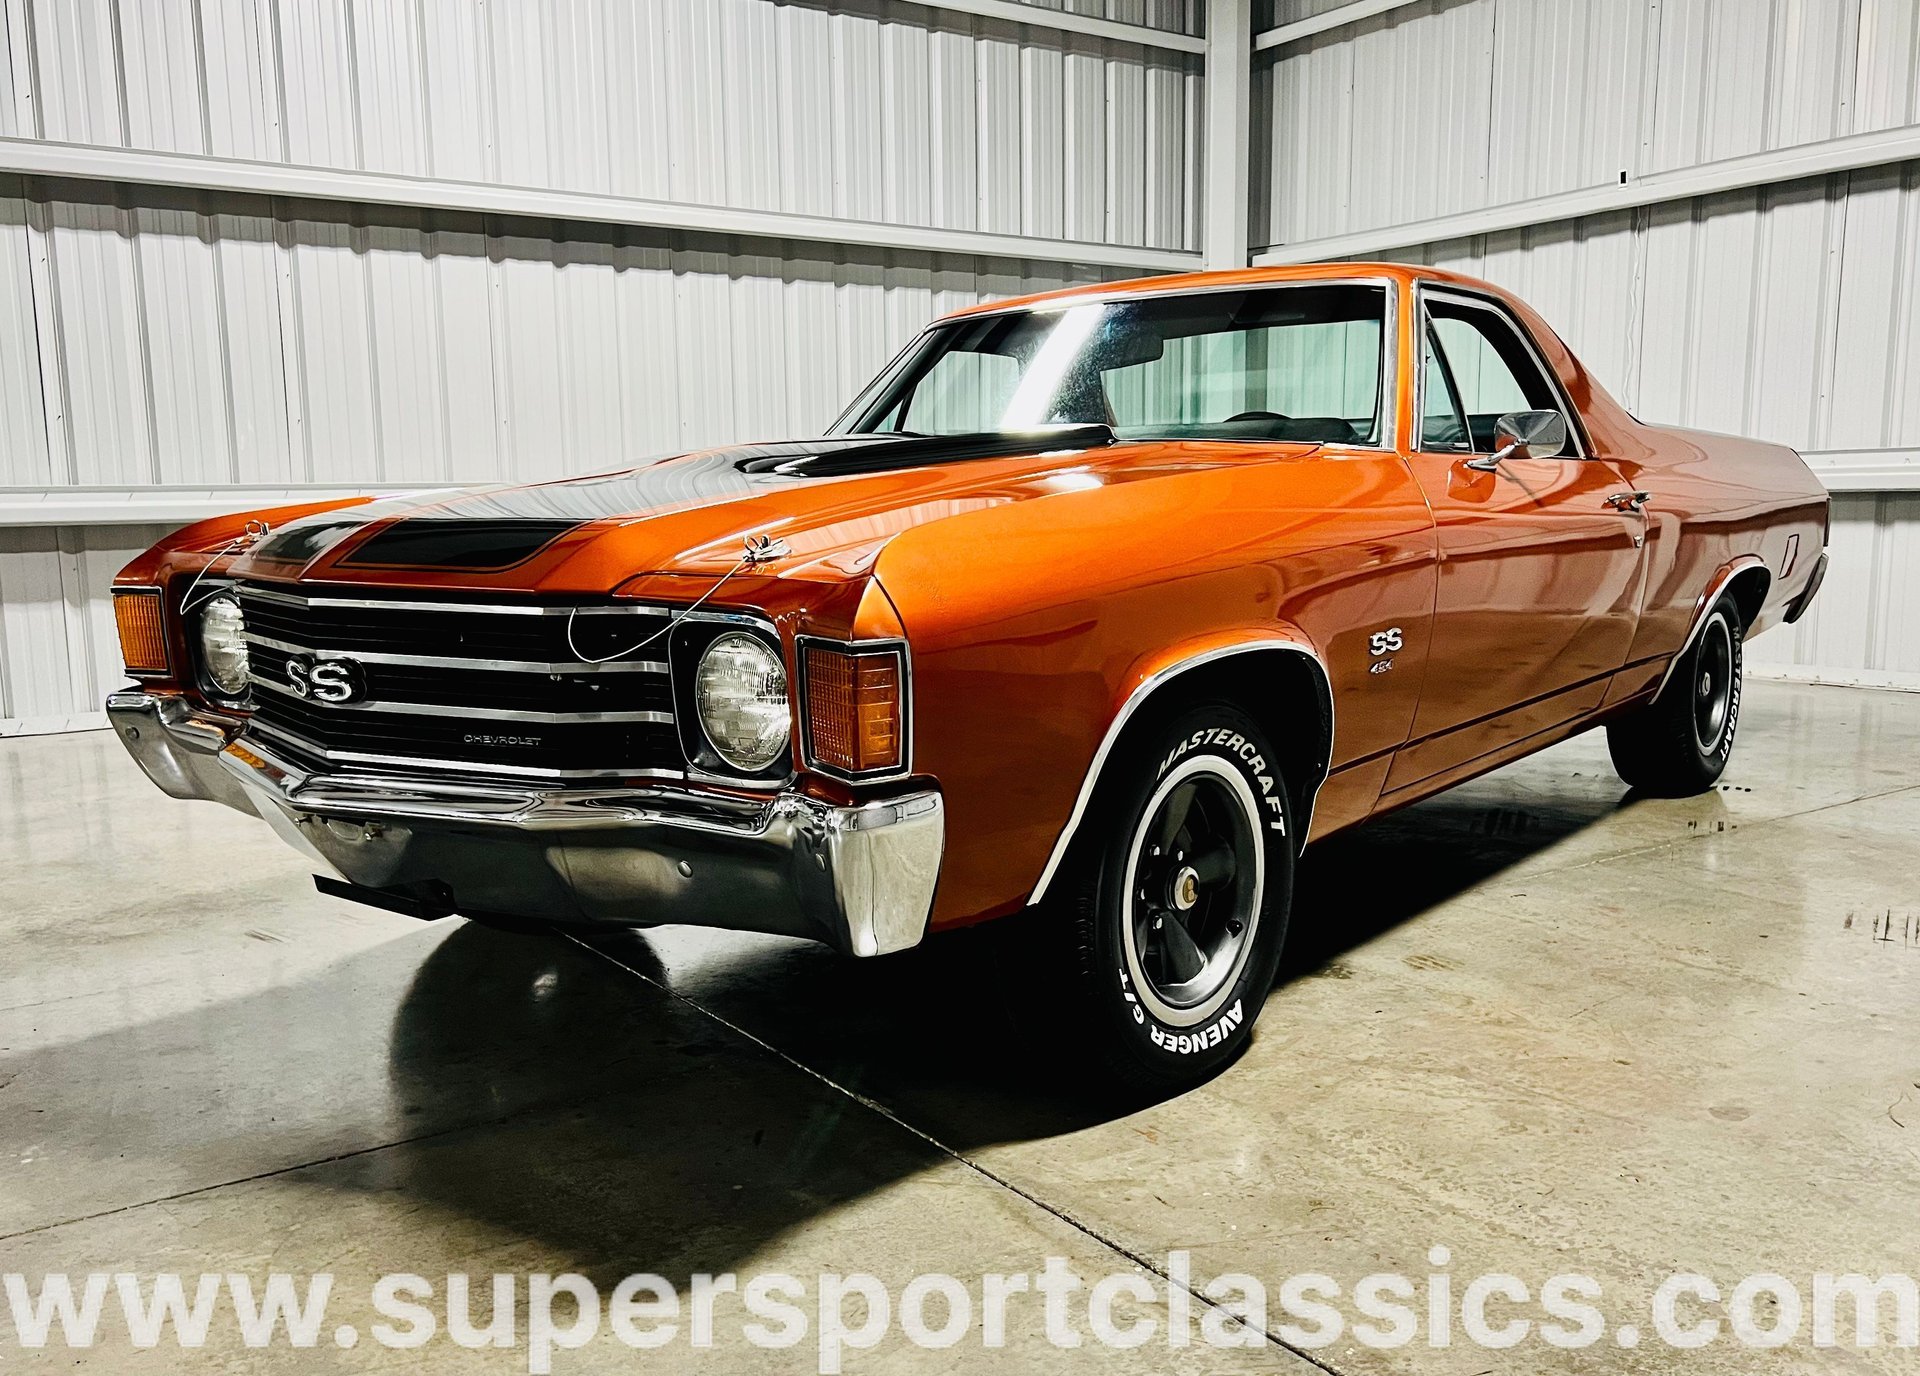 1972 Chevrolet El Camino | SuperSport Classics